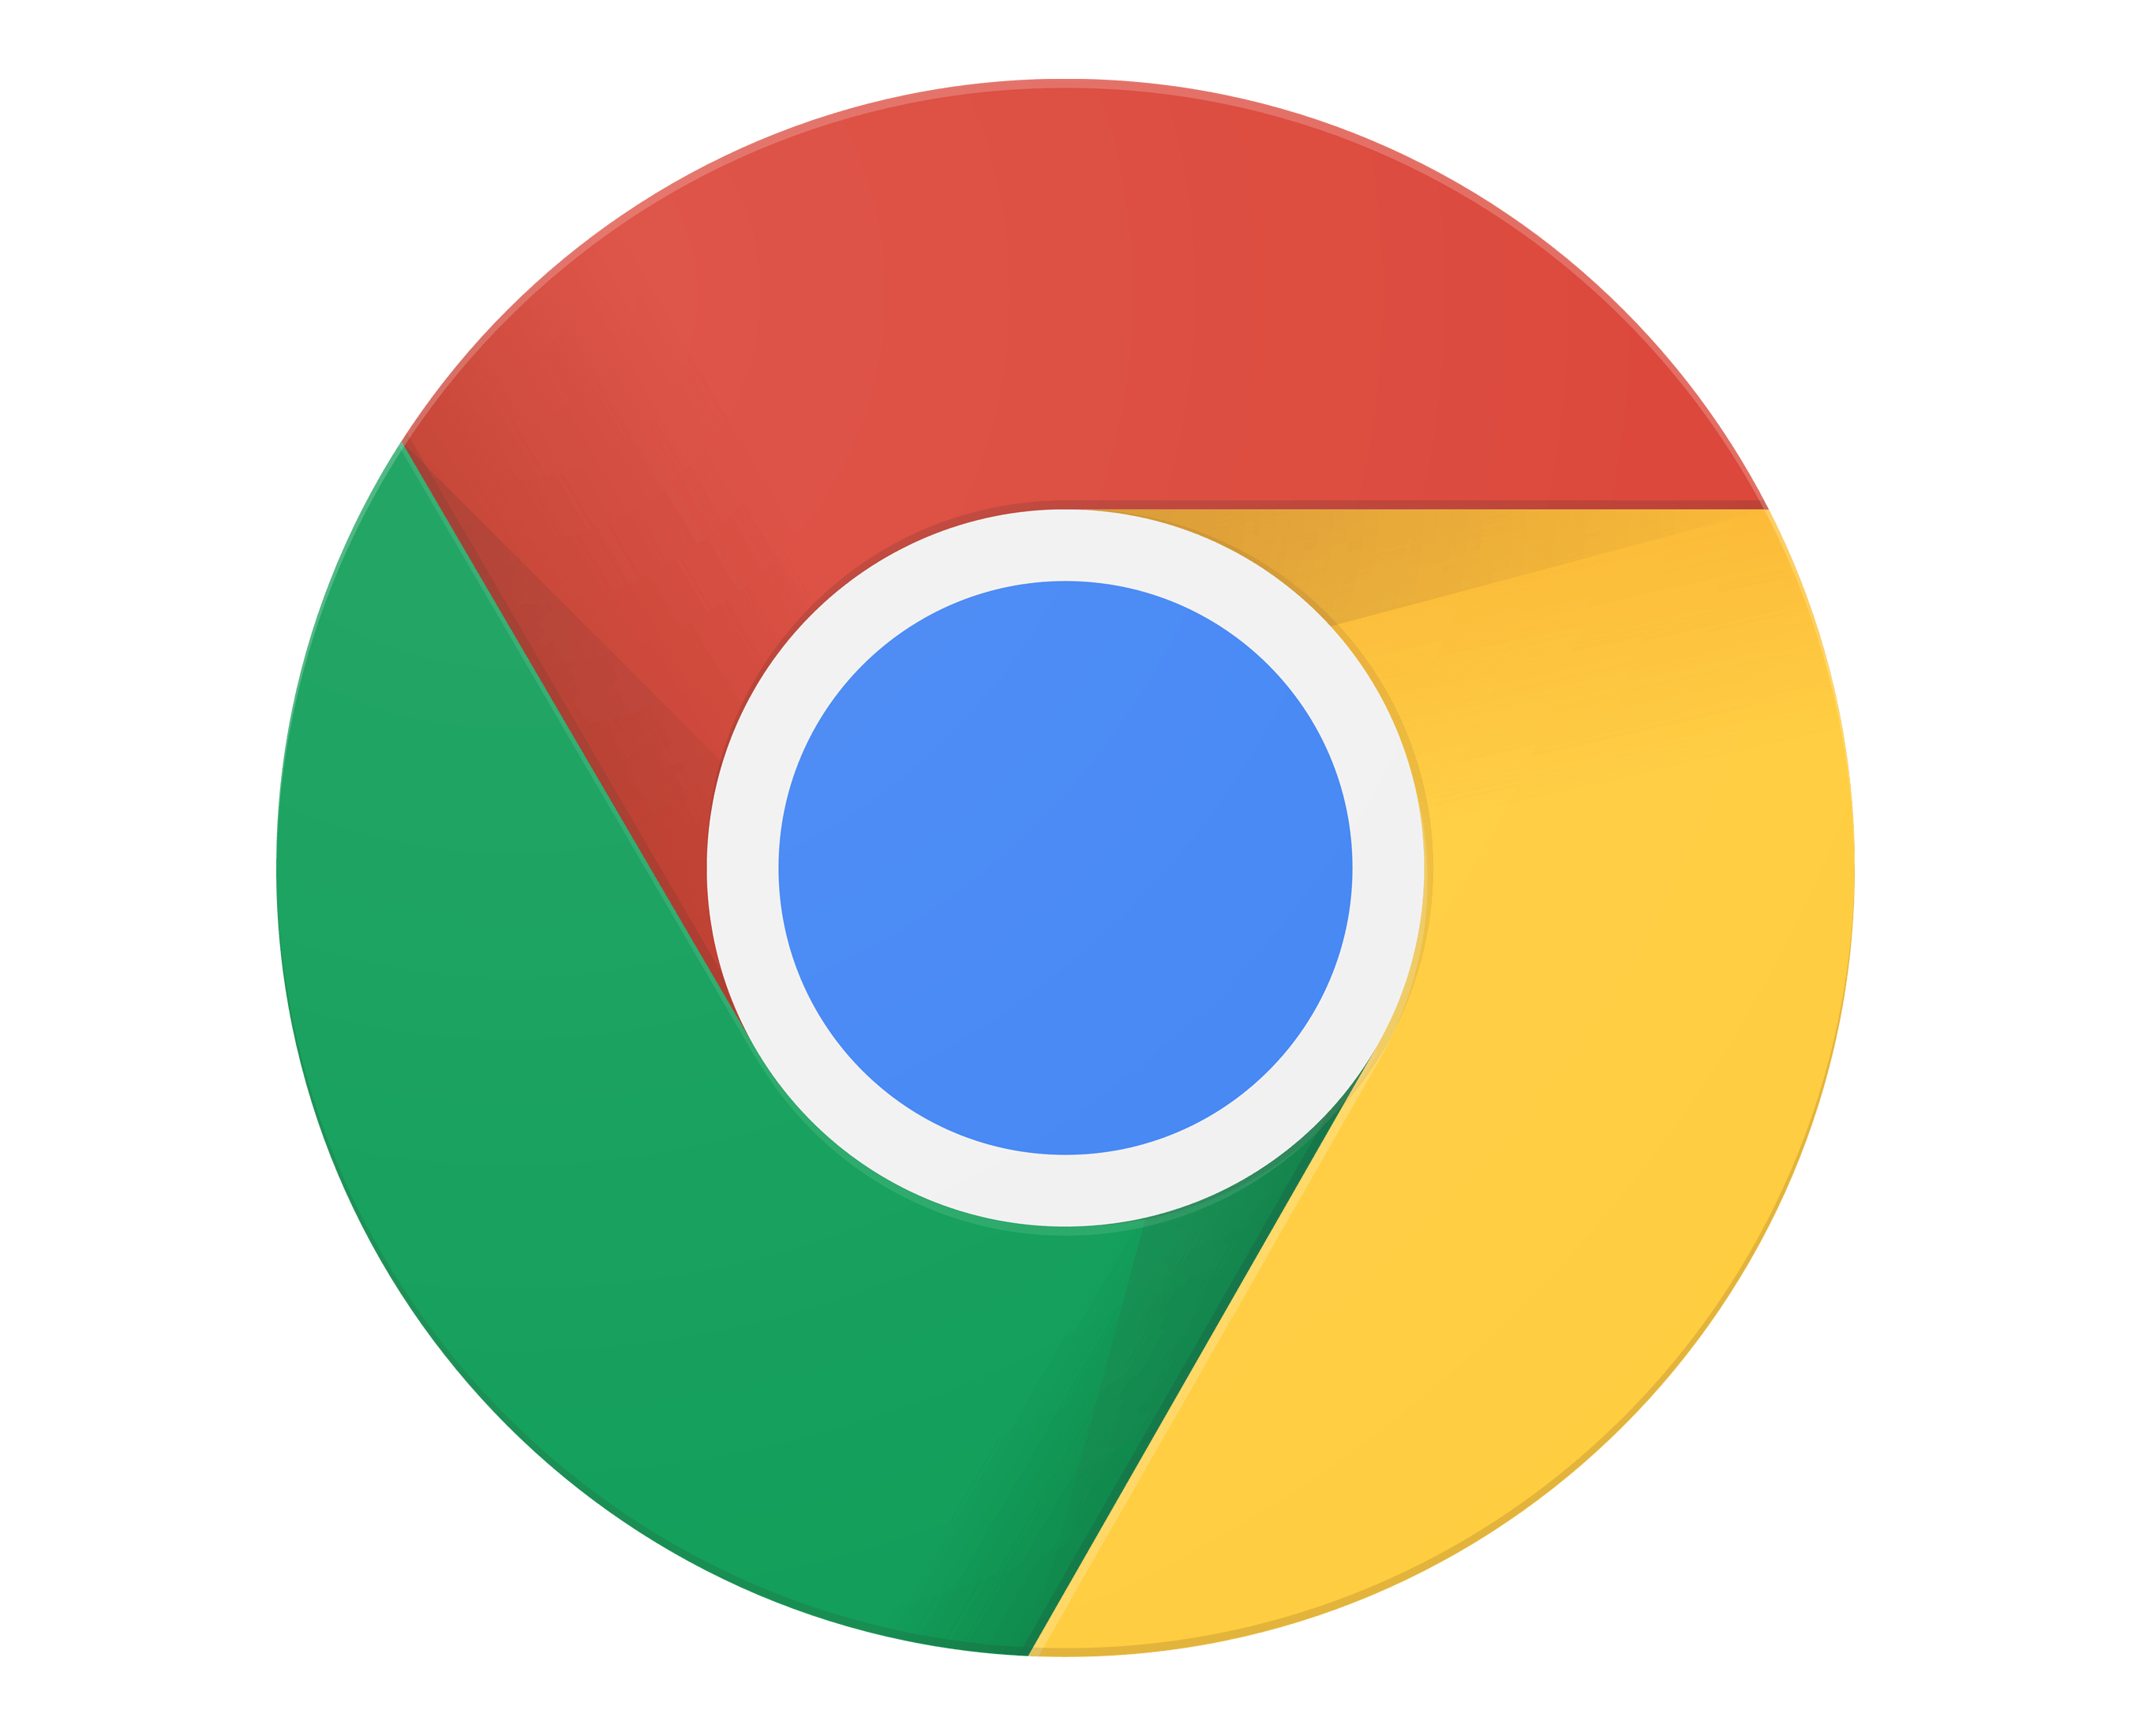 Google Chrome Logo - Chrome Logo, Chrome Symbol, Meaning, History and Evolution